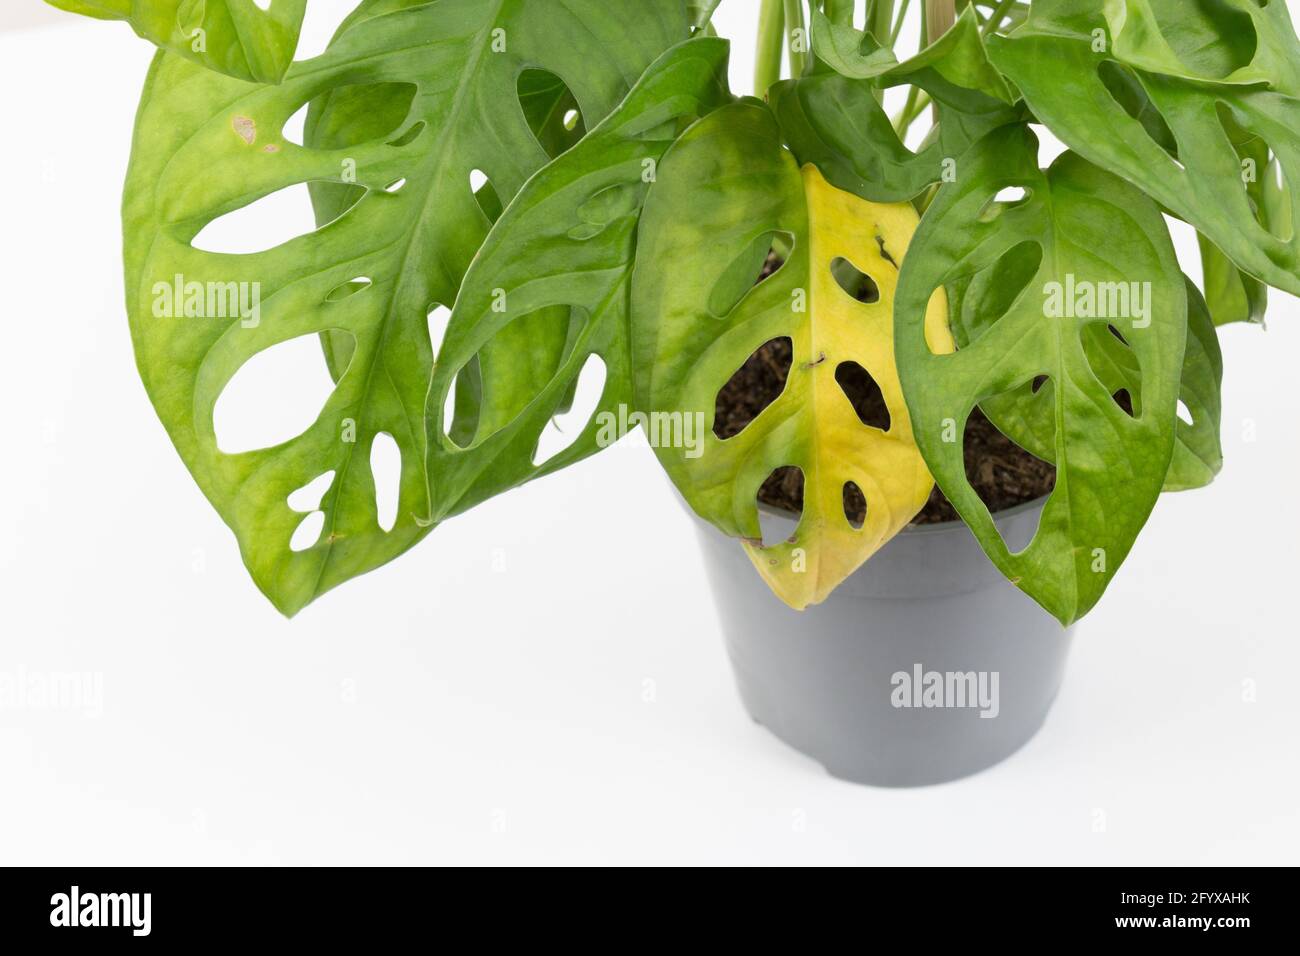 monstera Pflanze mit gelben Blättern. Wasser oder falsche Temperatur,  Gartenarbeit. Monstera-Blattkrankheiten Stockfotografie - Alamy